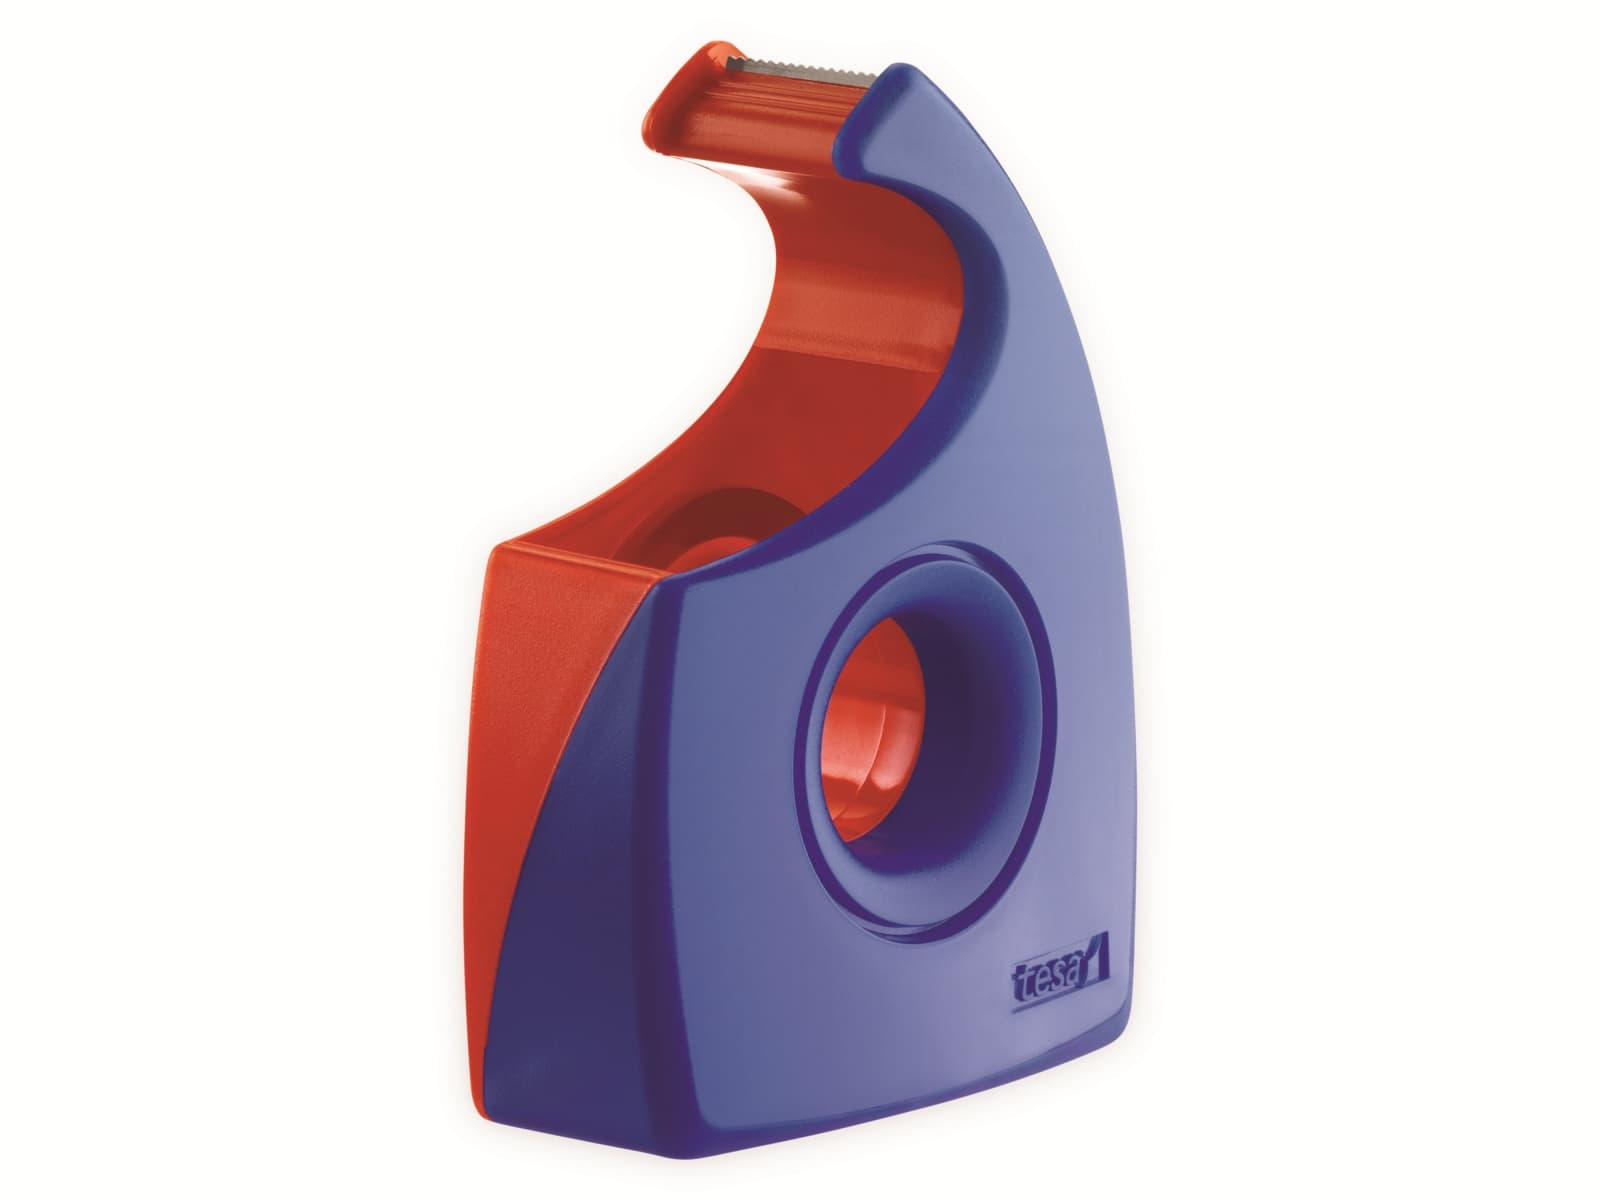 TESA ® Easy Cut Handabroller 33:19 rot-blau, leer, bis 33m:19mm, 57444-00001-01